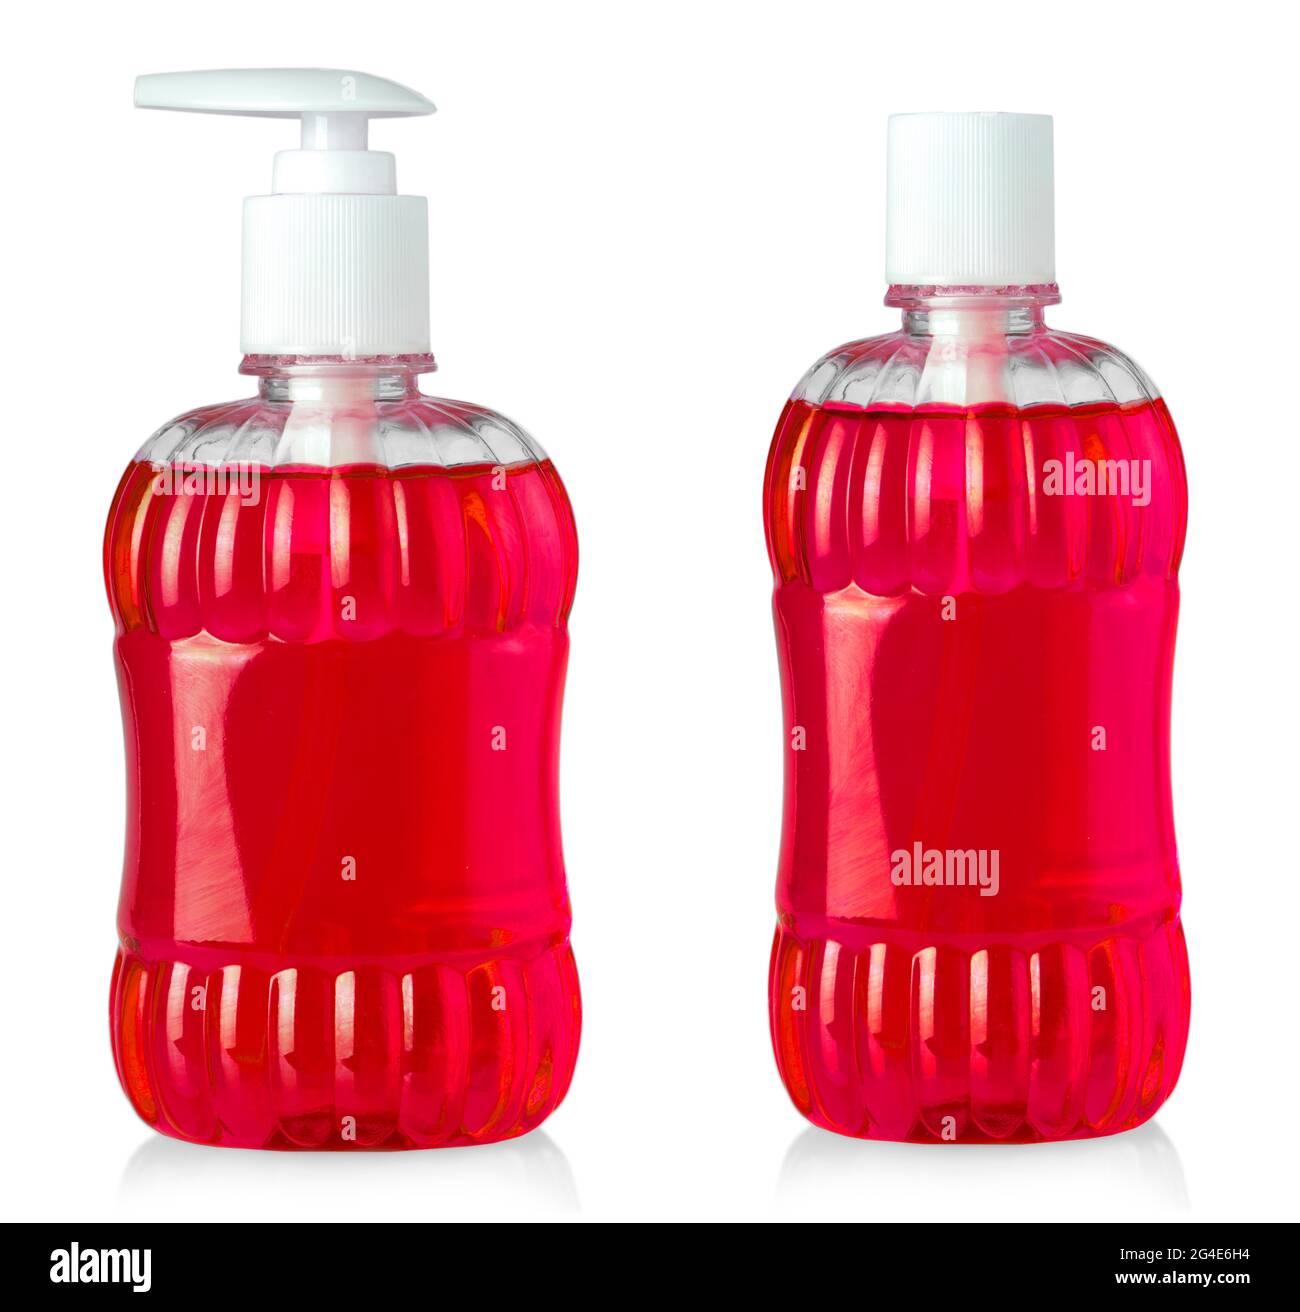 Rote Duschgel-Flaschen isoliert auf weißem Hintergrund Stockfotografie -  Alamy